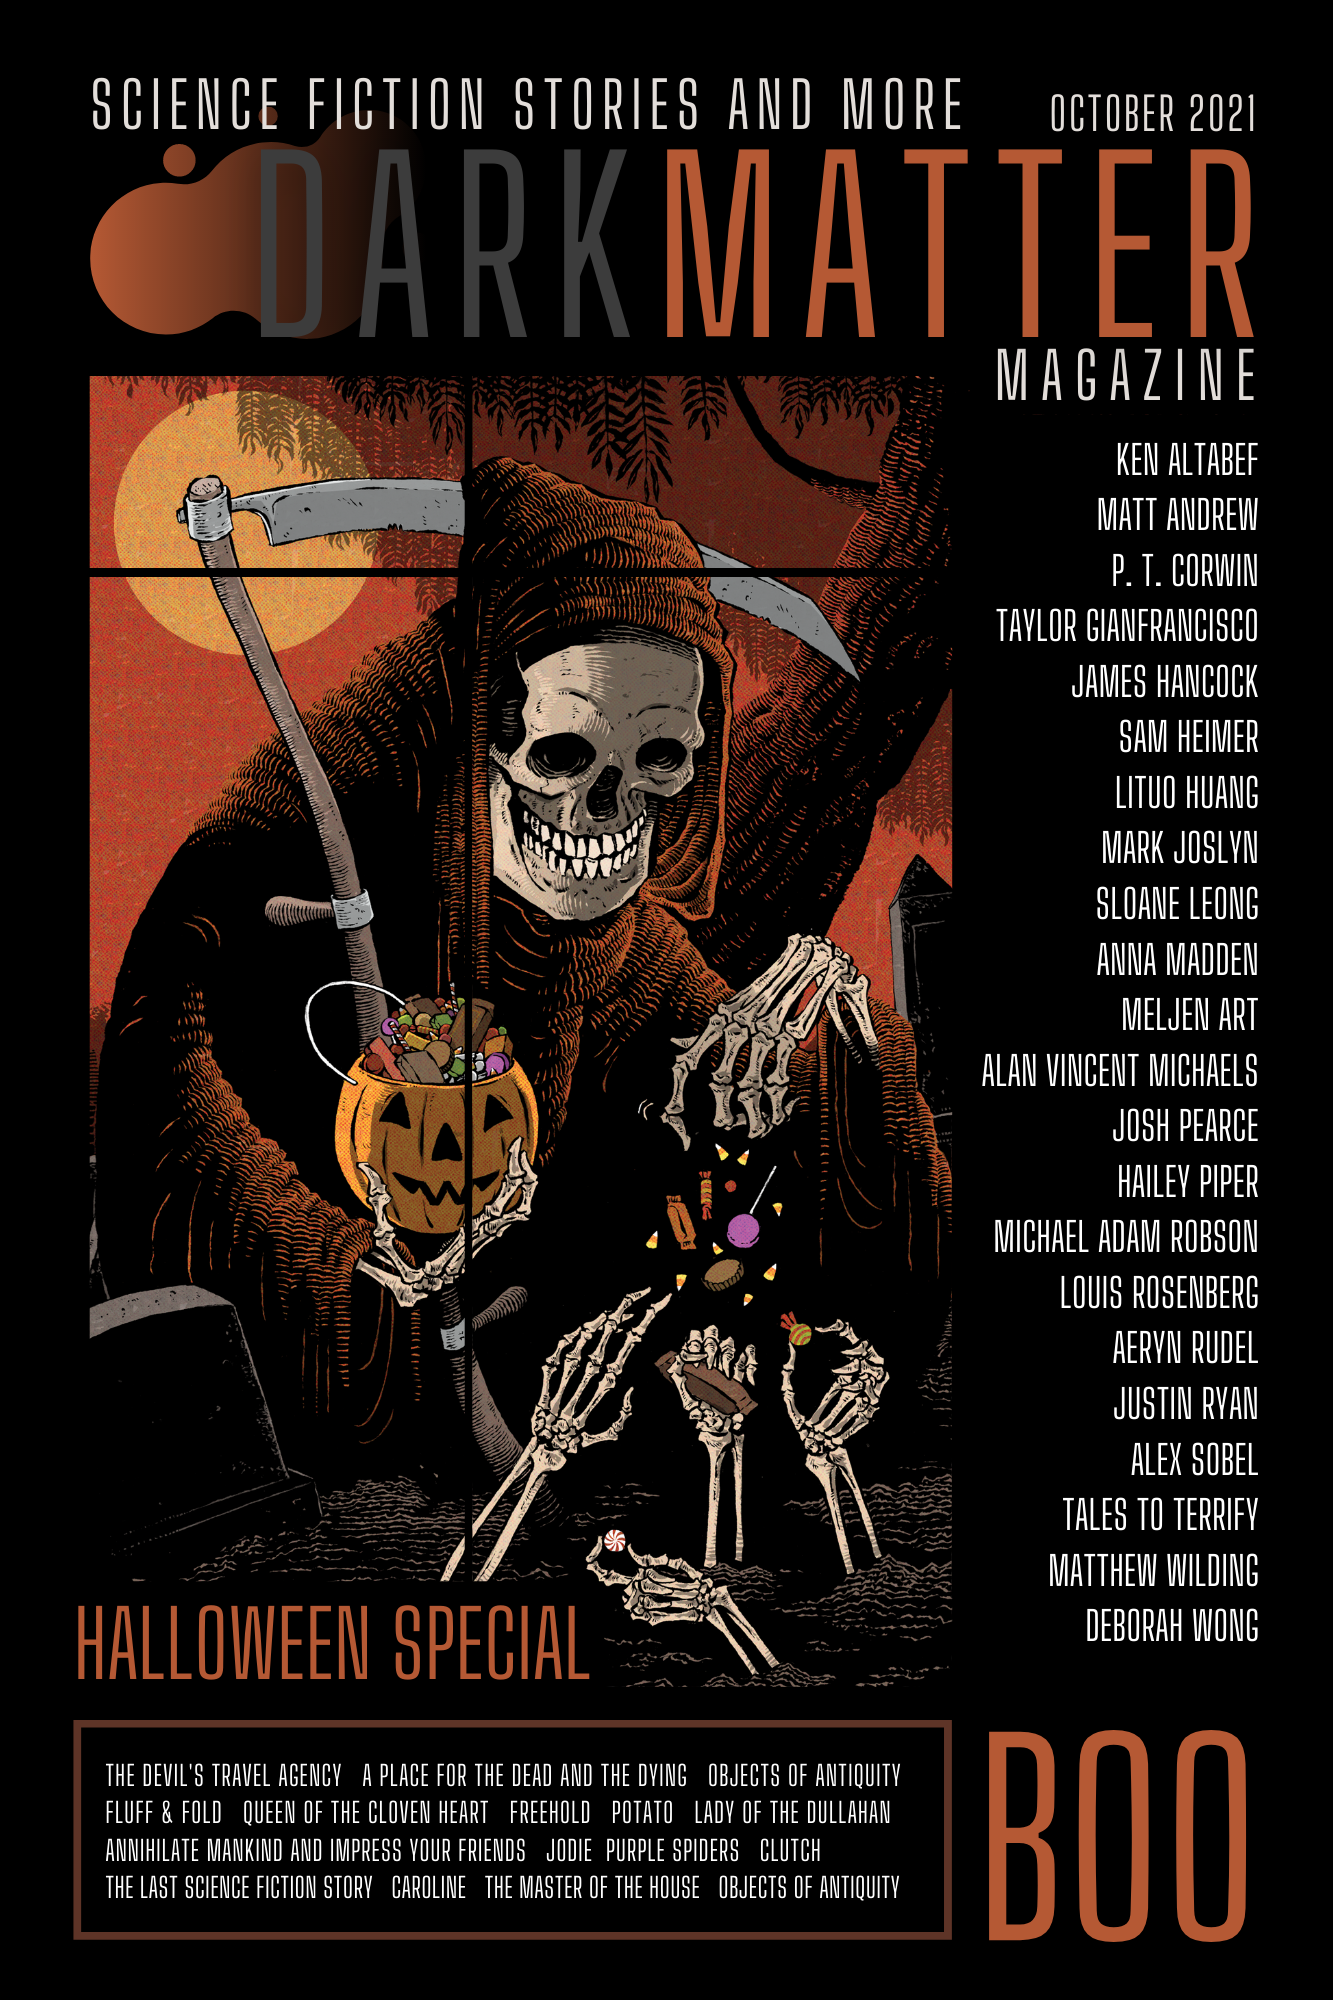 Dark Matter Magazine Special Halloween Issue October 2021